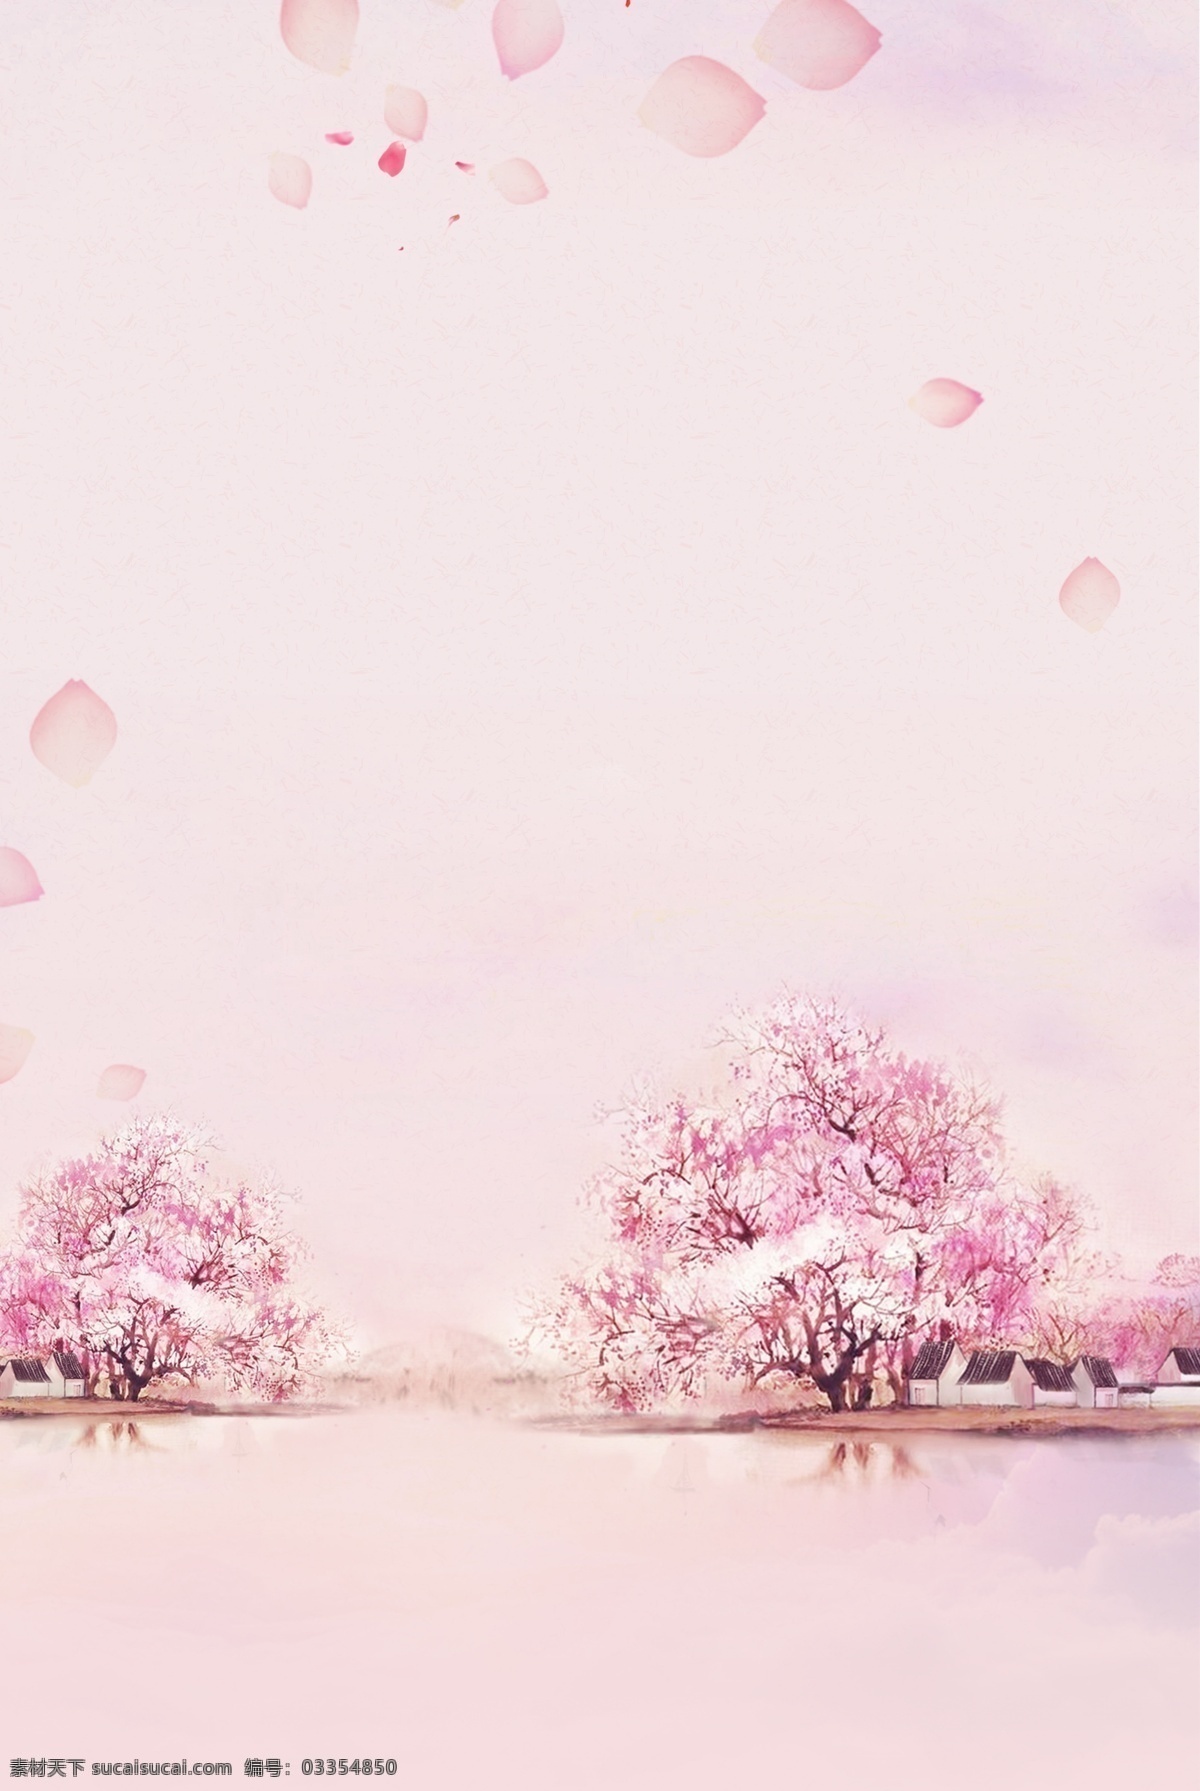 简单 桃花 树 倒影 背景 桃花节 春天 春季 唯美 清新 春季上新 桃花树 十里桃花 花瓣